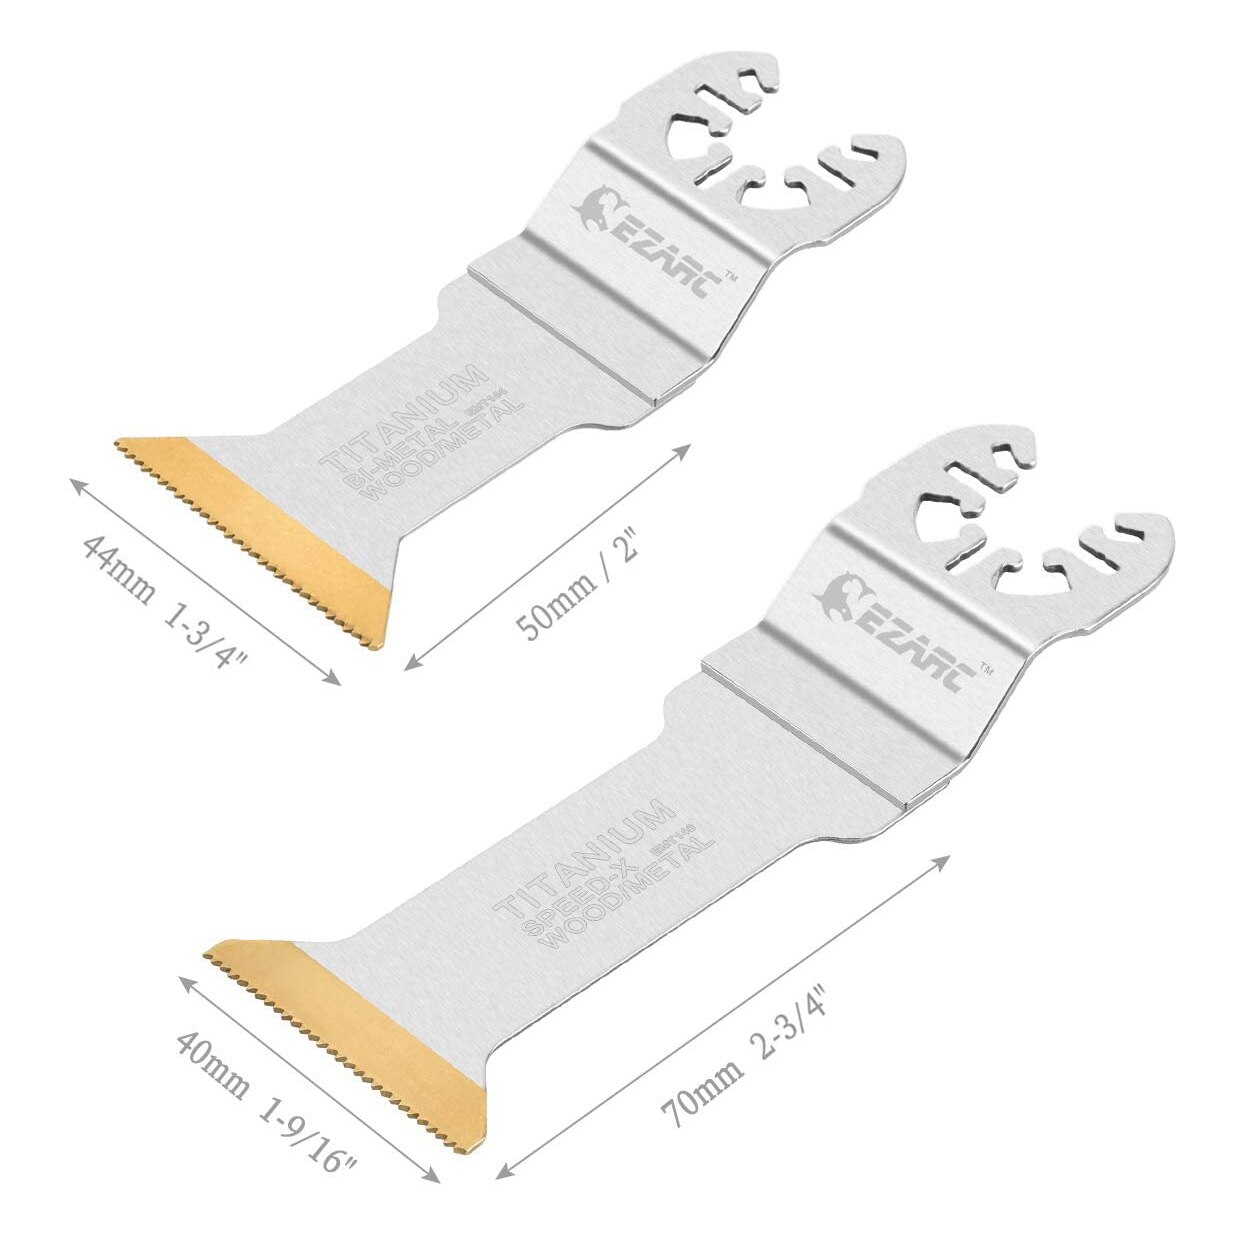 Ezarc 6Pcs Titanium Oscillerende Multitool Bladen Lange Cut Zaagbladen Snelheid Snijden Voor Hout, Metaal En Hard Materiaal